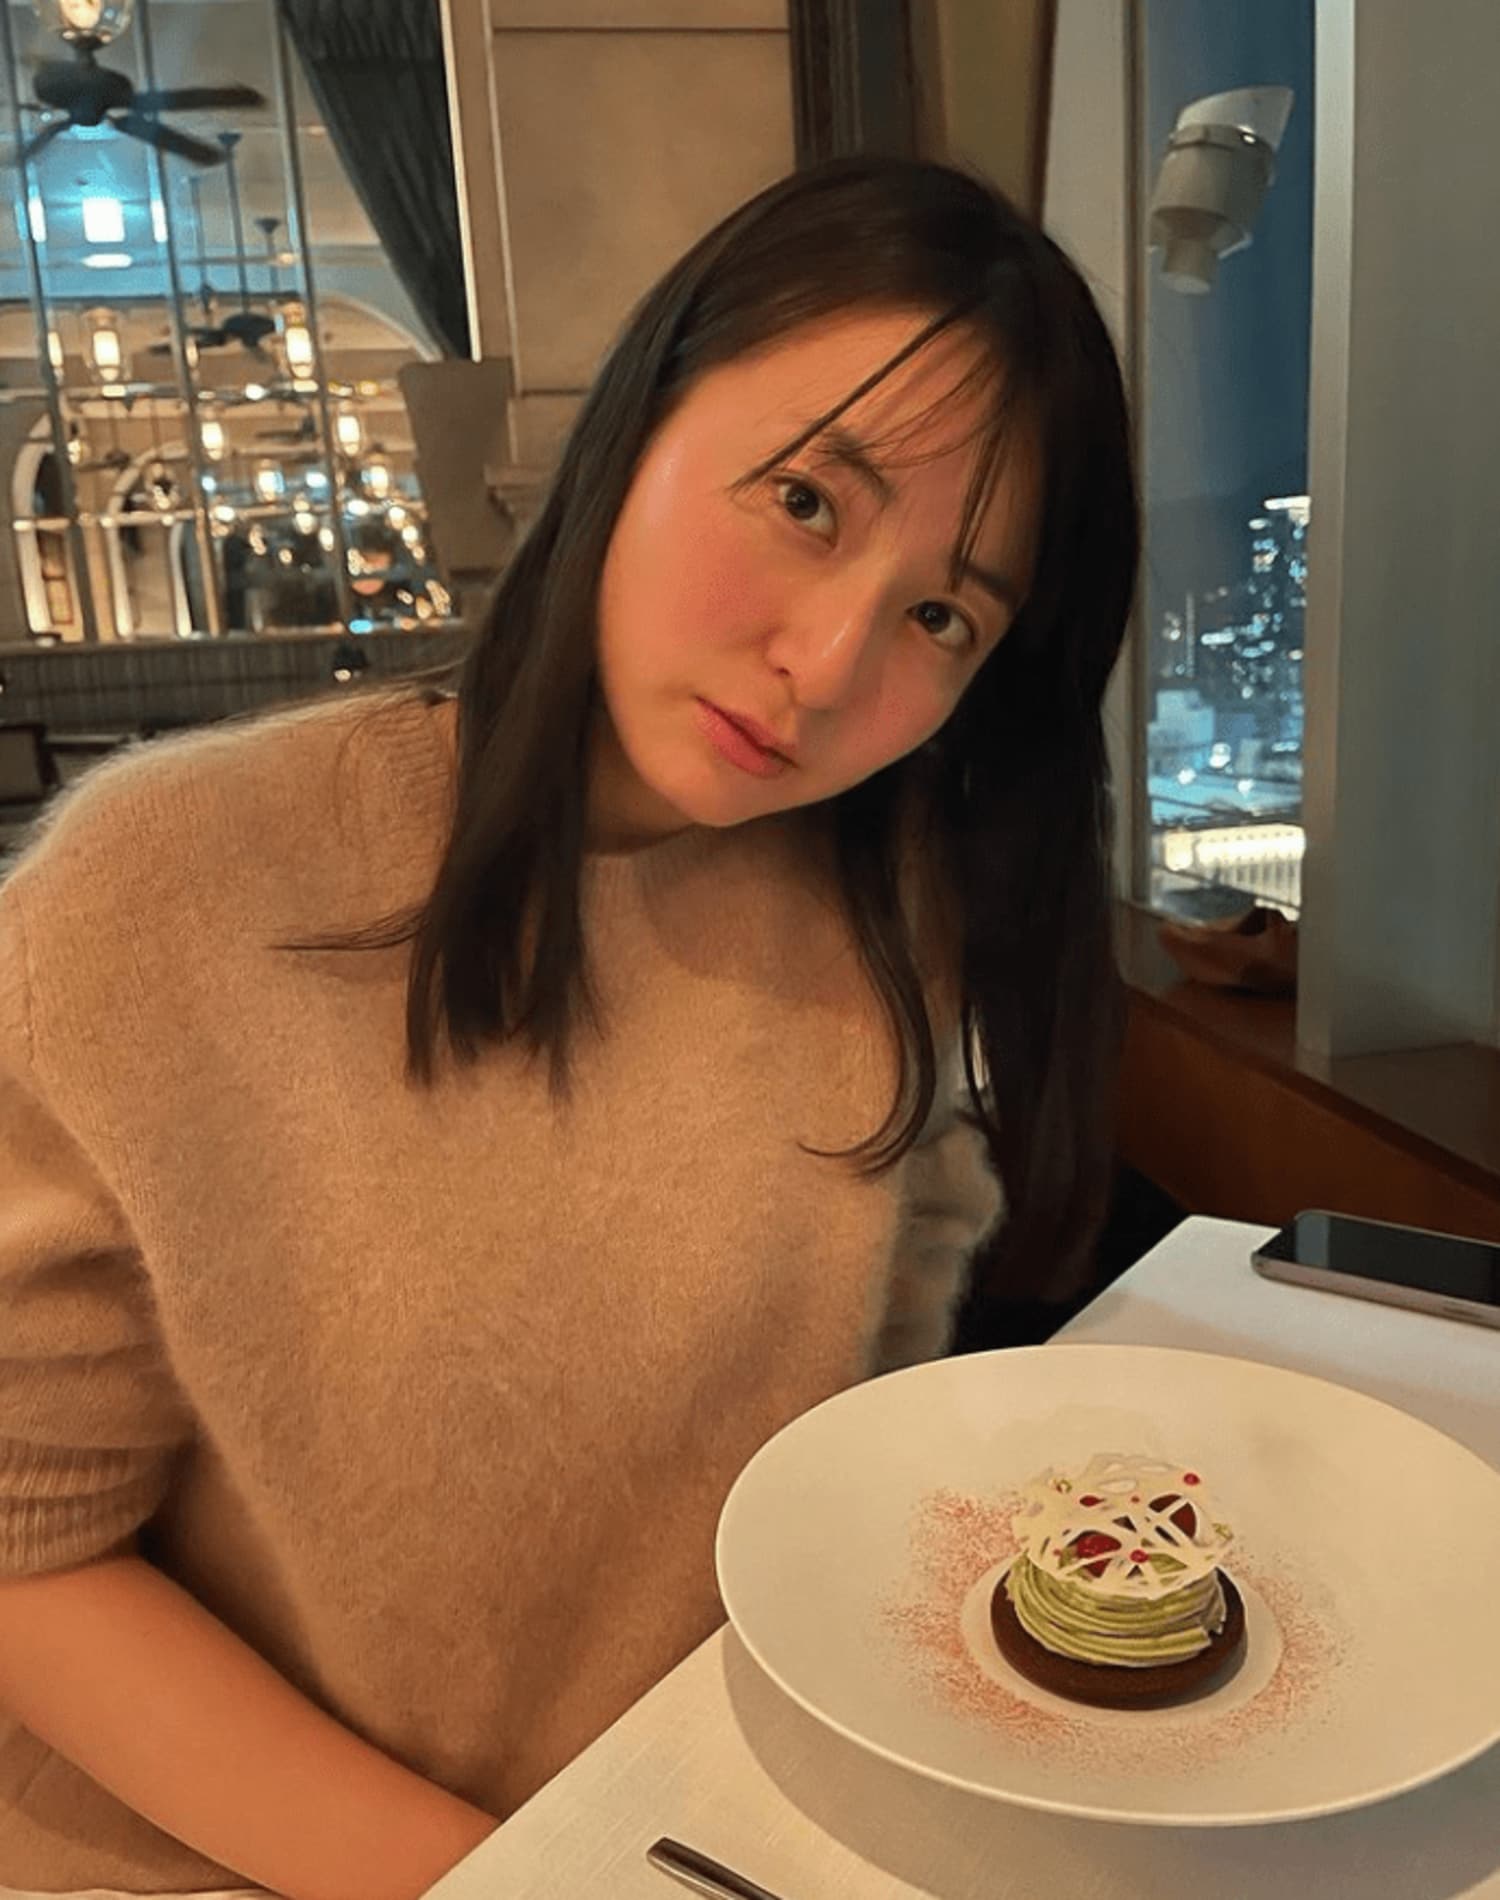 『バチェラー』岩間恵、新婚生活で幸せ太り!?「2か月で4キロ増」の画像